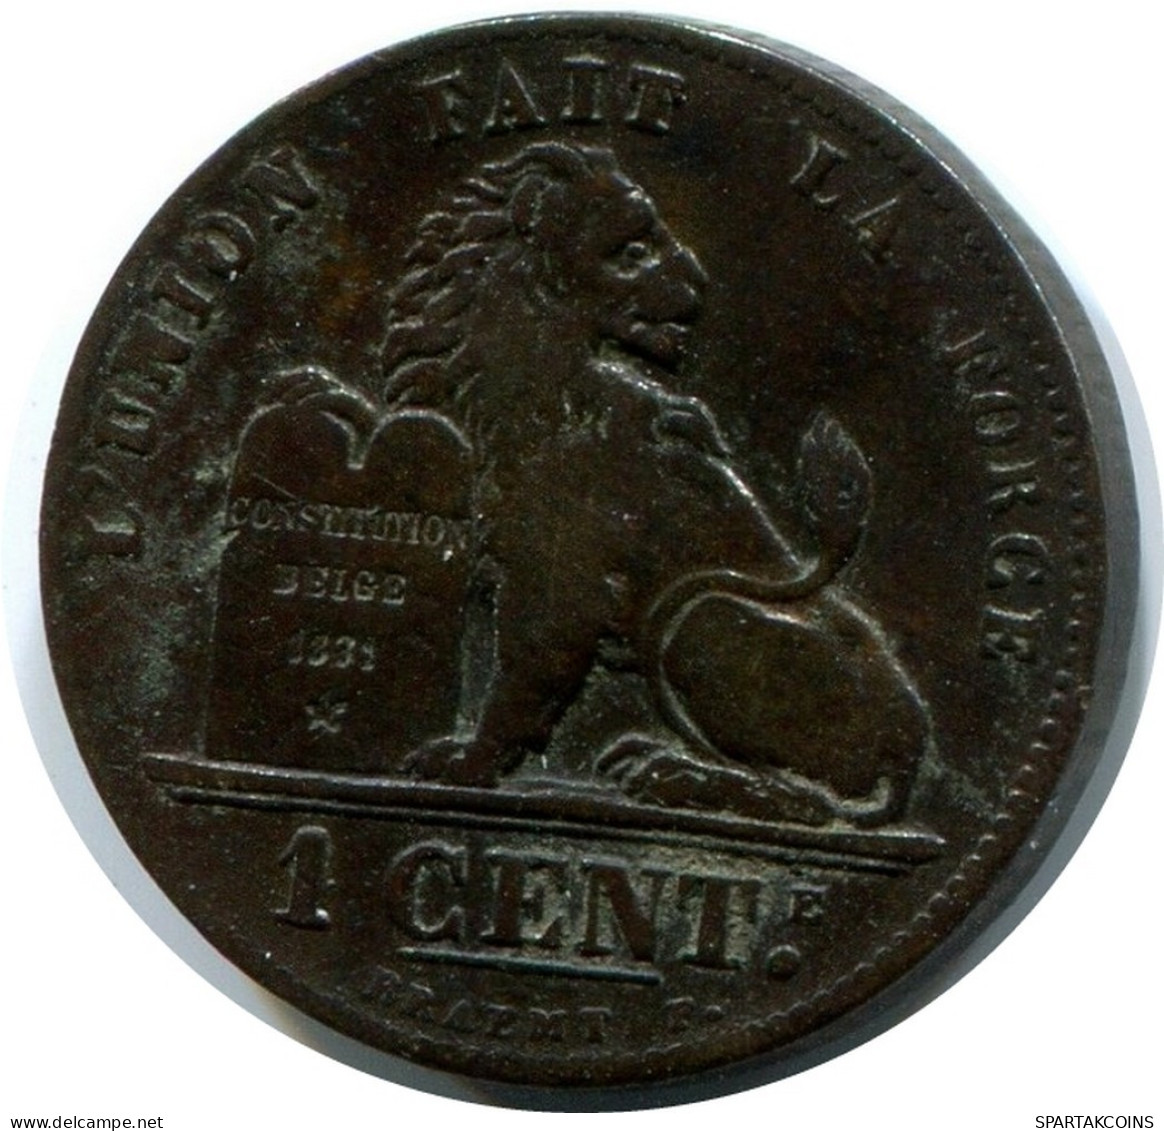 1 CENTIME 1899 BELGIQUE BELGIUM Pièce FRENCH Text #AX354.F.A - 1 Cent